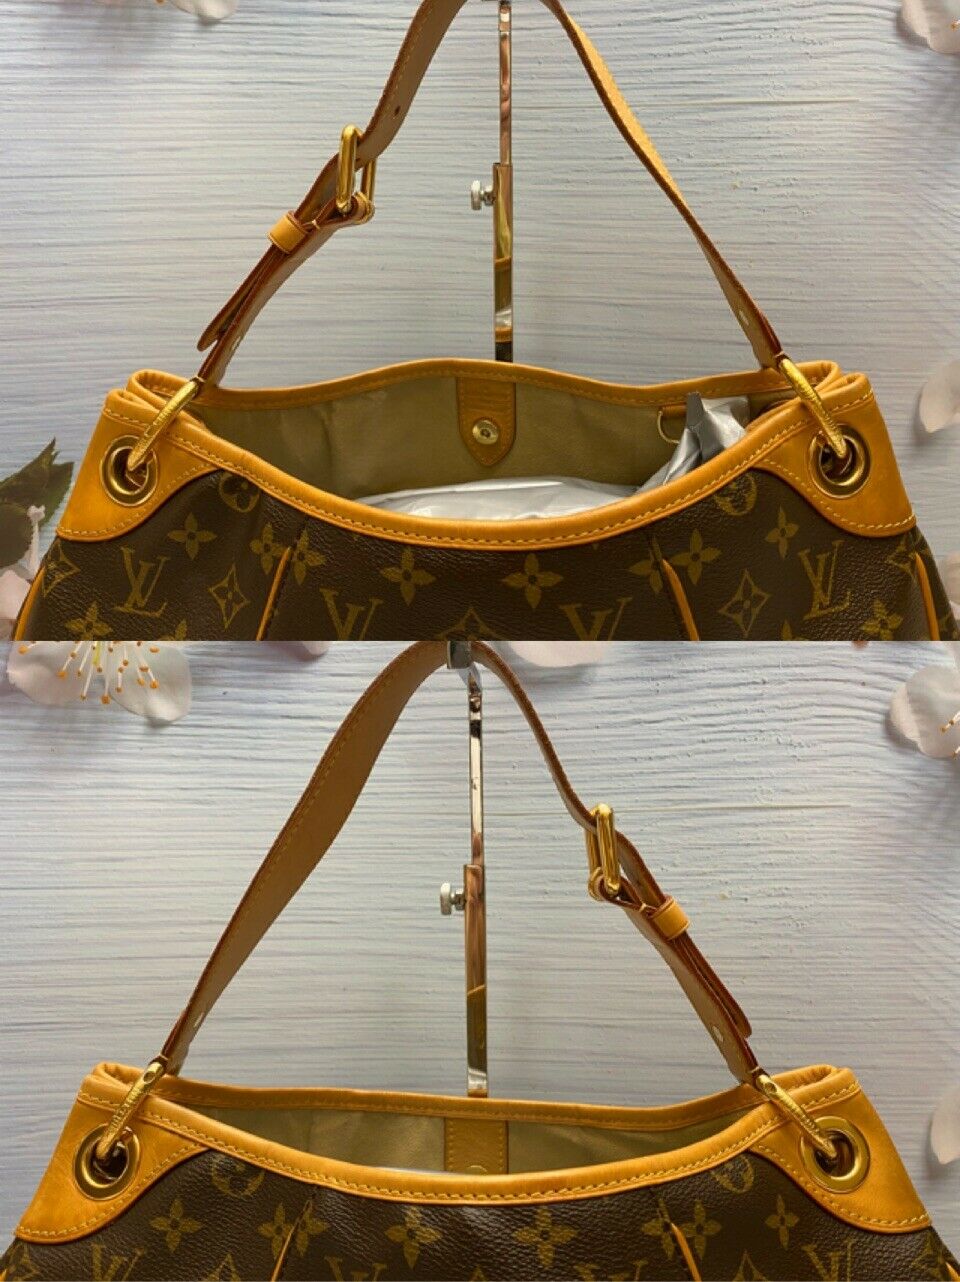 LOUIS VUITTON Monogram Pochette Accessoires Handbag Hobobag Brown